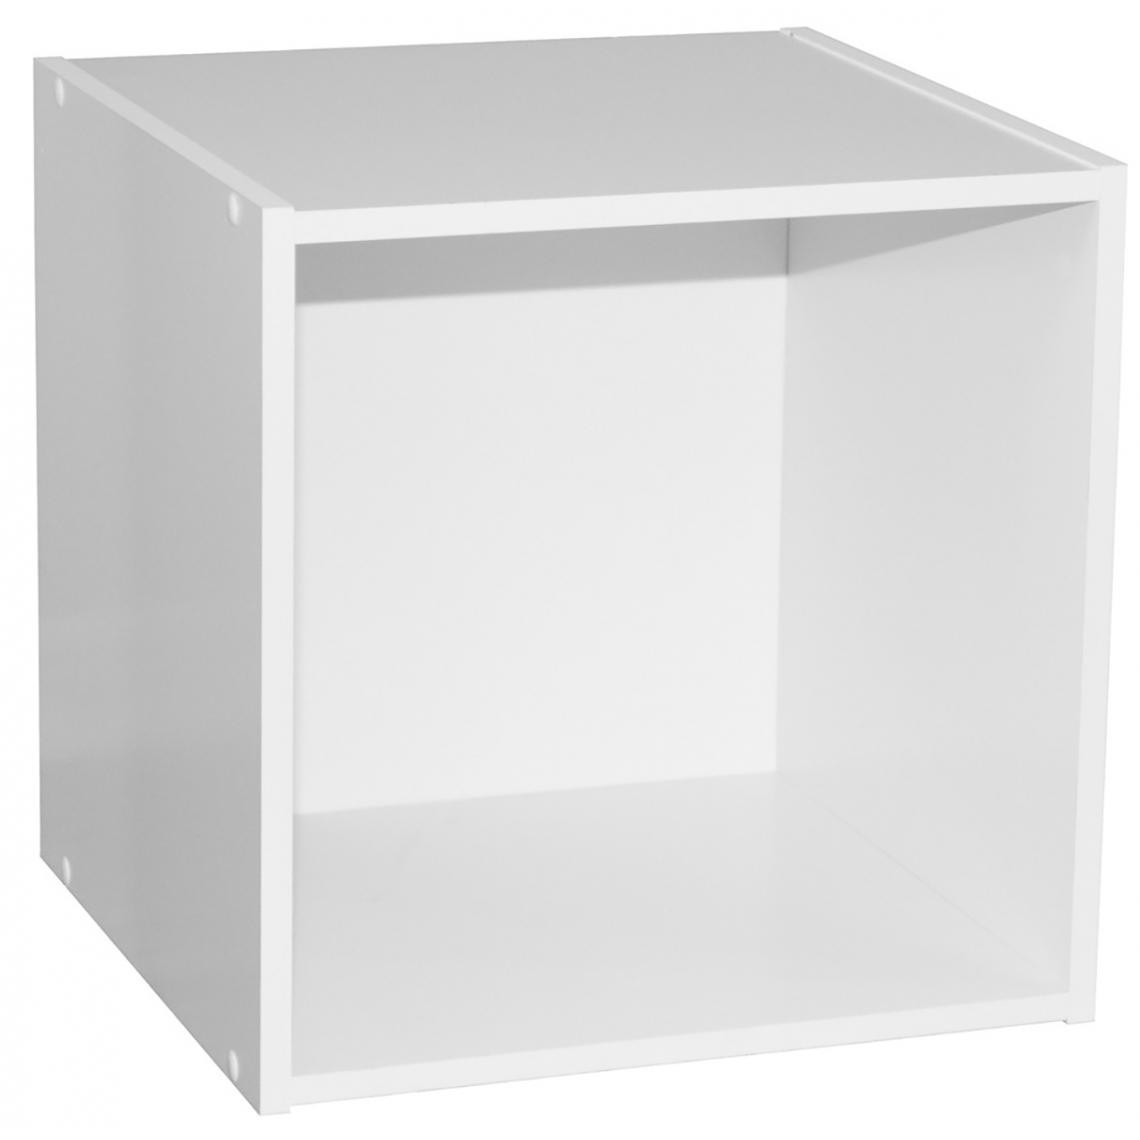 Pegane - Cube en panneaux de particules, blanc - Dim : L35,1 x P33,7 x H34,9cm - Etagères